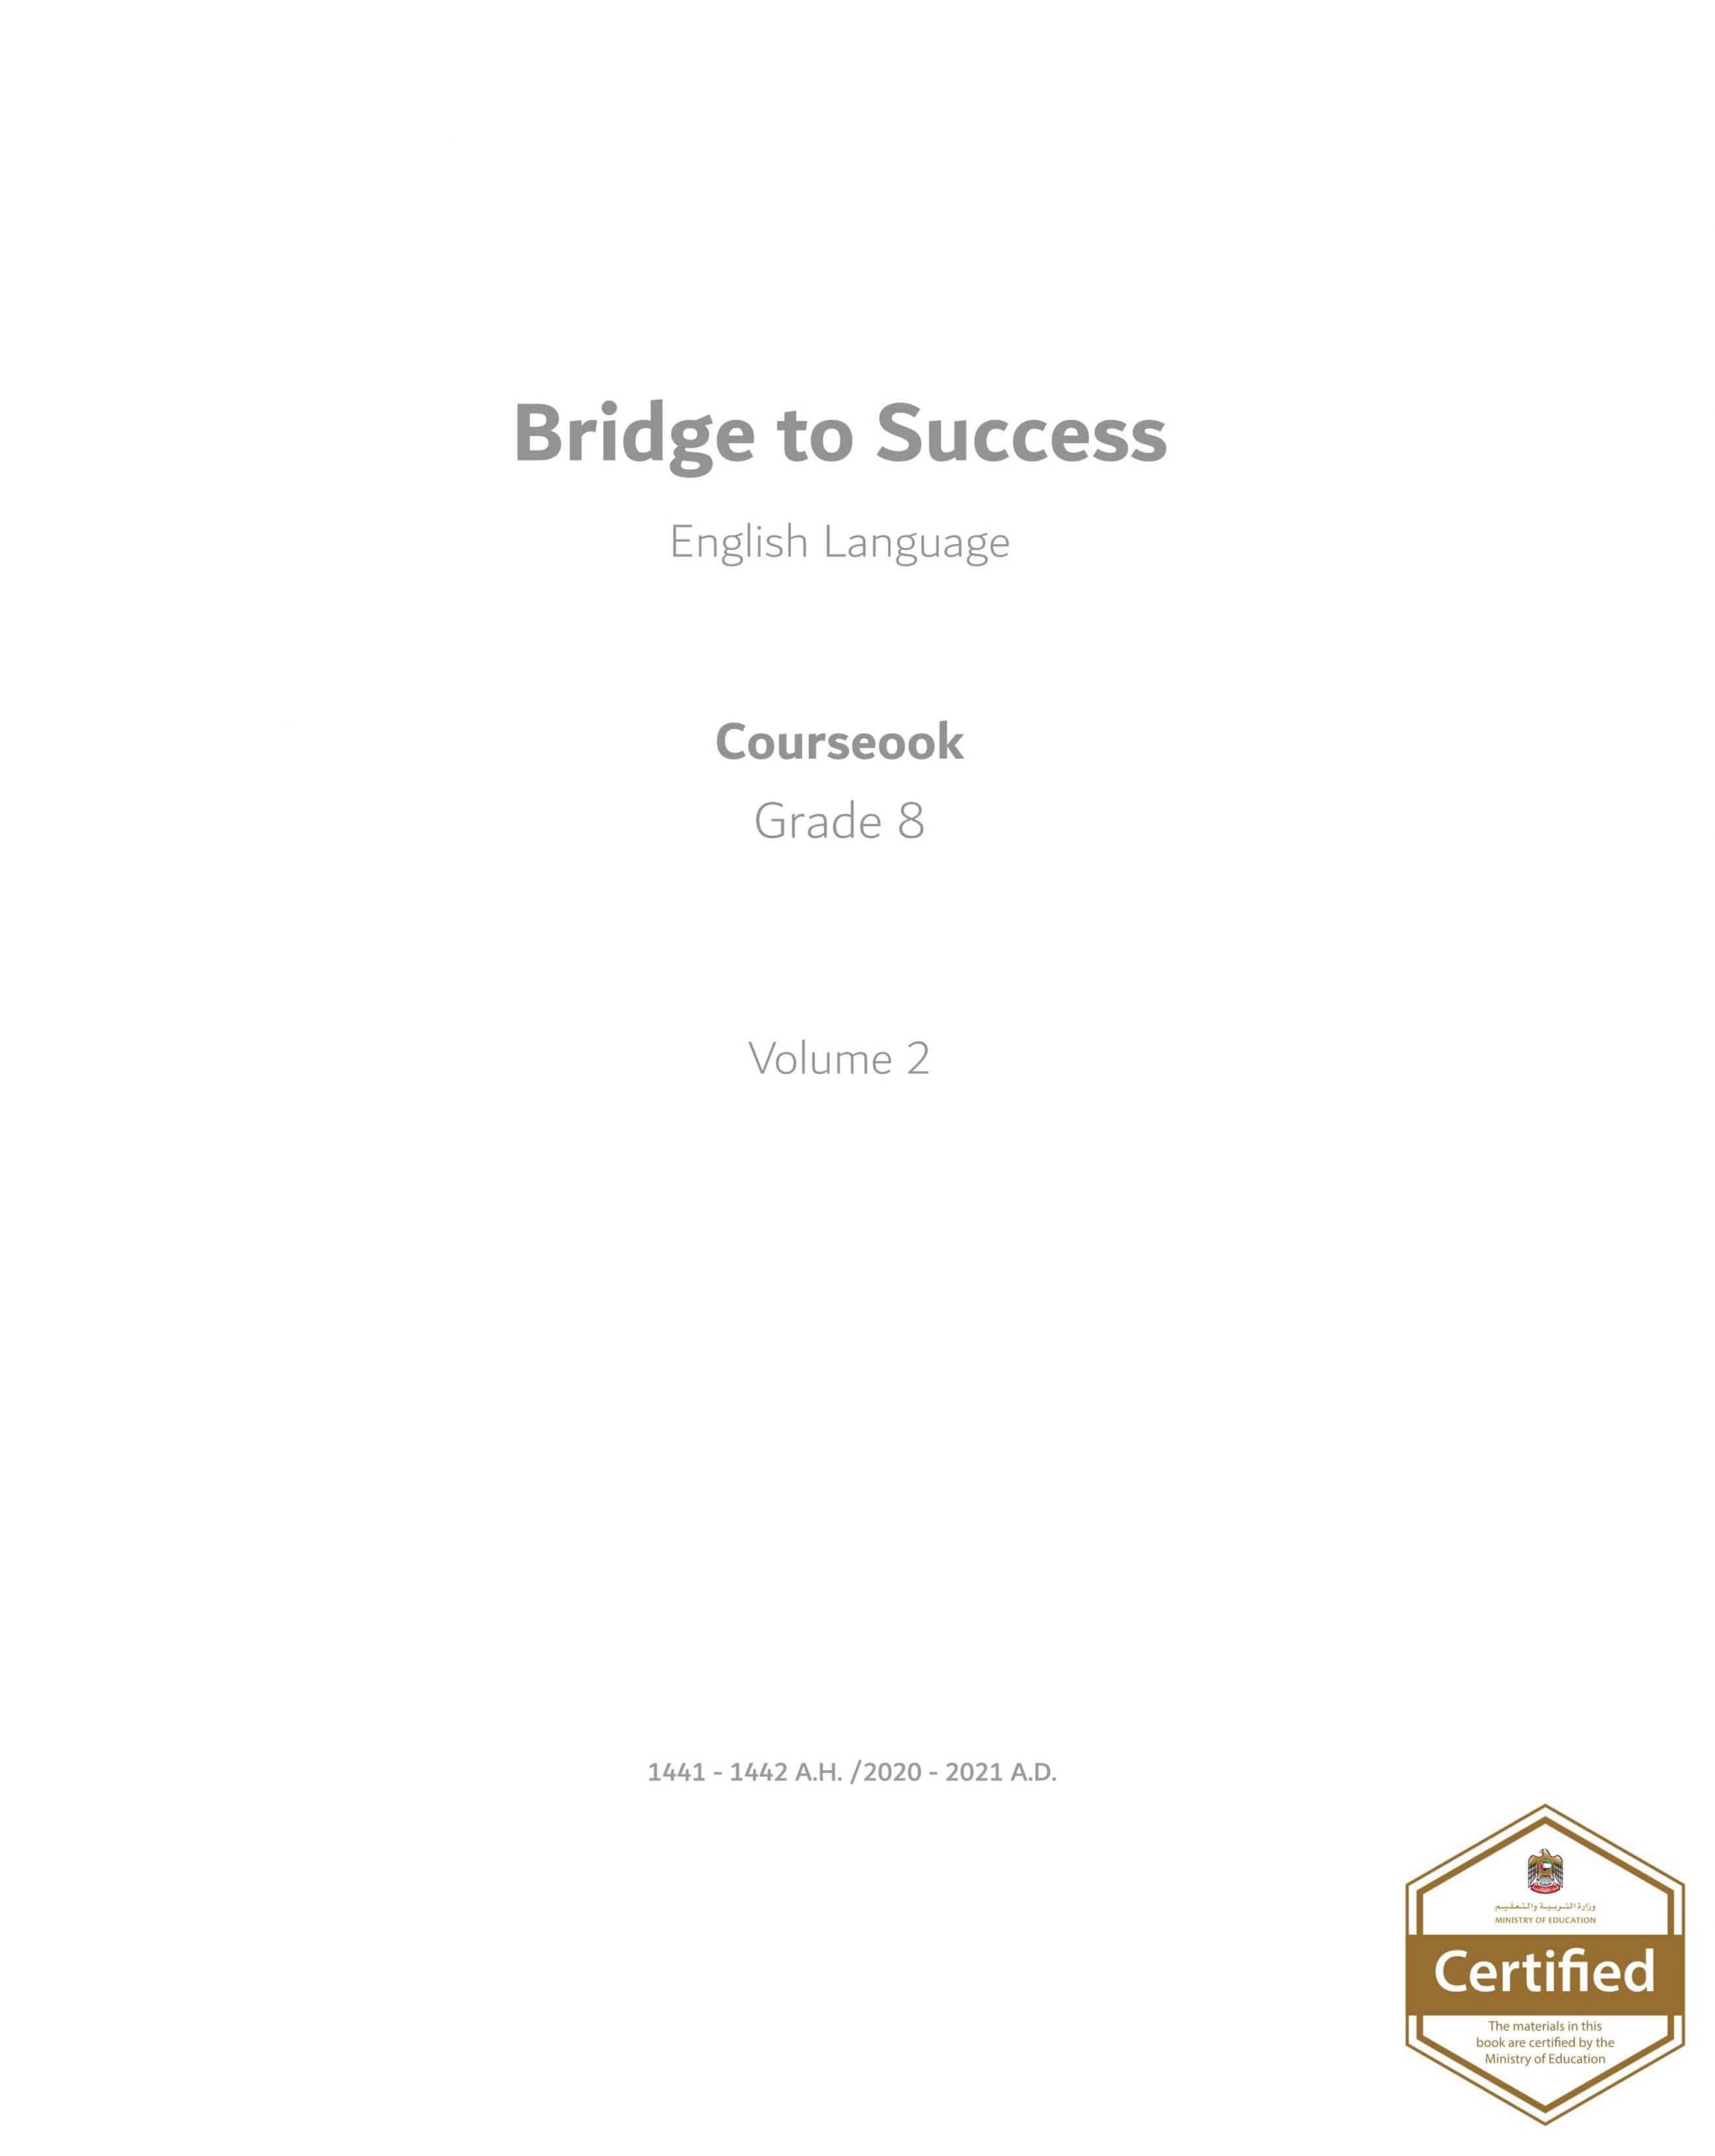 كتاب الطالب course book الفصل الدراسي الثاني 2020-2021 الصف الثامن مادة اللغة الانجليزية 